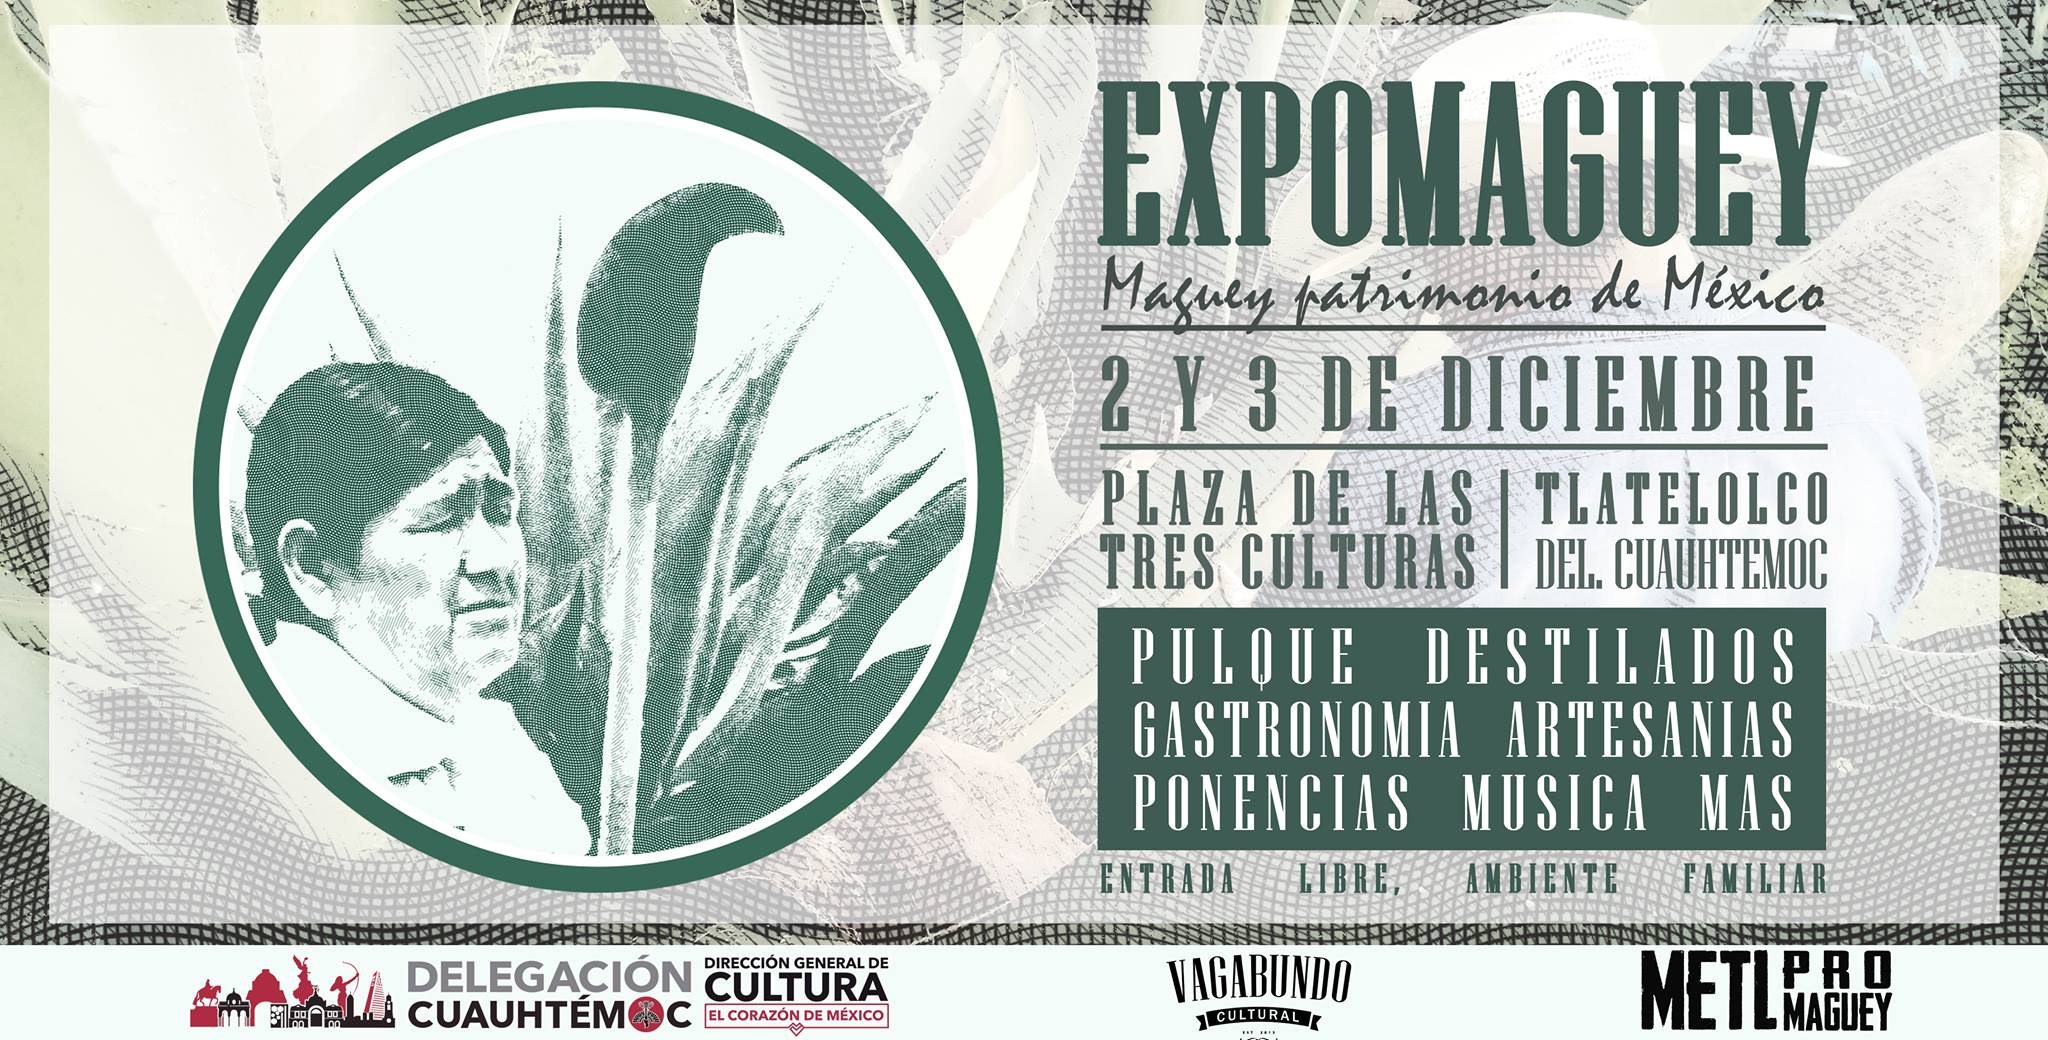 ExpoMaguey 2017, Plaza de las Tres Culturas CDMX.